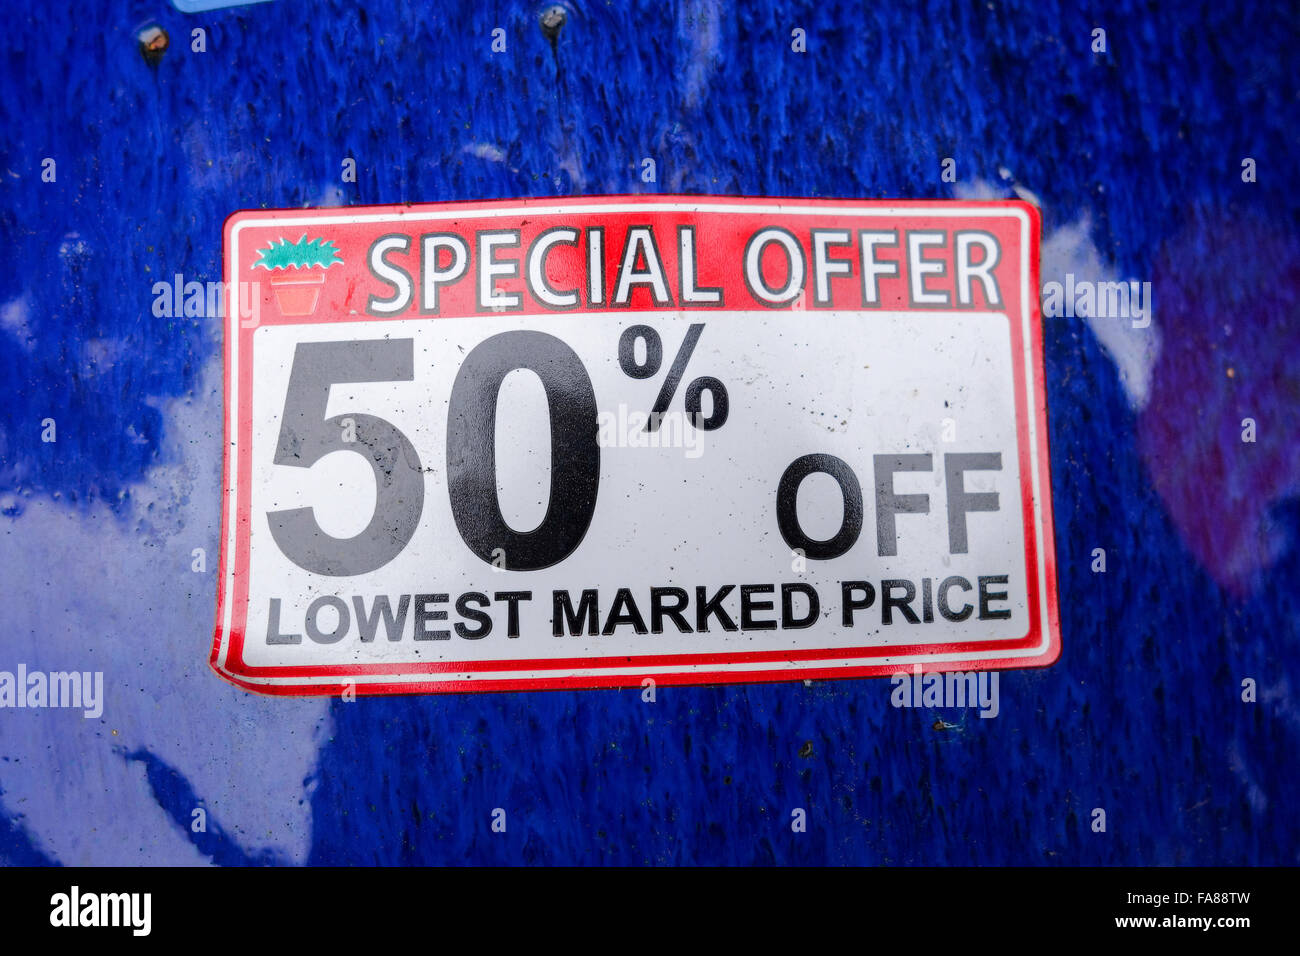 Un 50% de descuento oferta especial de menor precio sticker sobre una superficie brillante azul Foto de stock